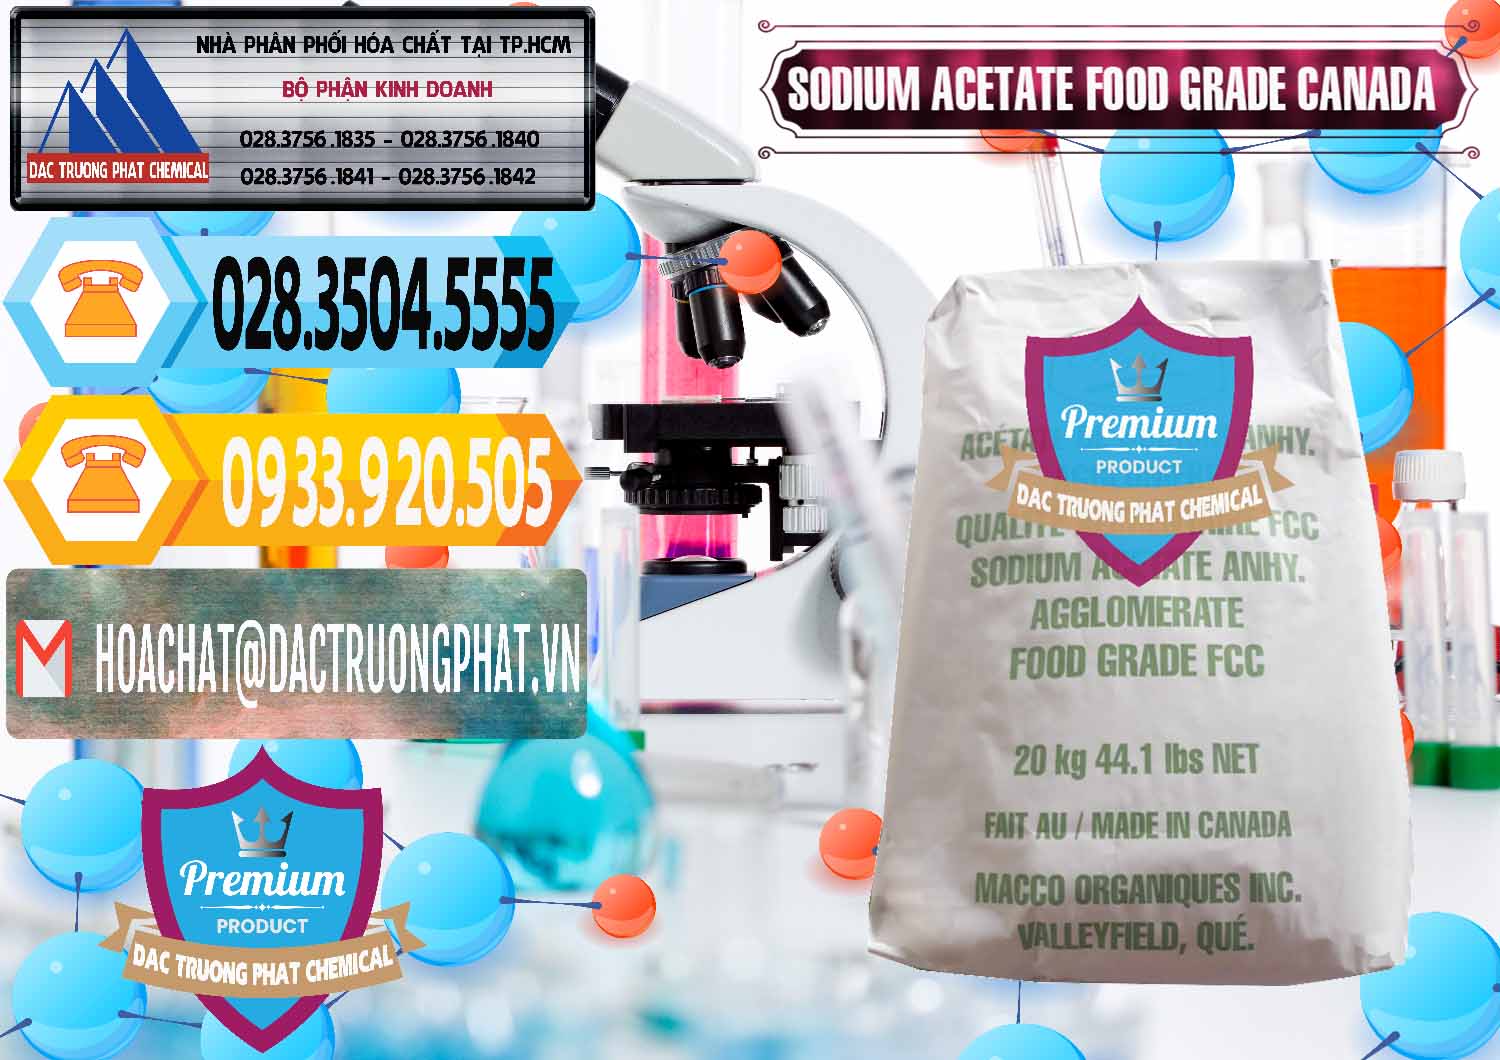 Nơi chuyên phân phối - bán Sodium Acetate - Natri Acetate Food Grade Canada - 0282 - Đơn vị cung cấp ( kinh doanh ) hóa chất tại TP.HCM - hoachattayrua.net